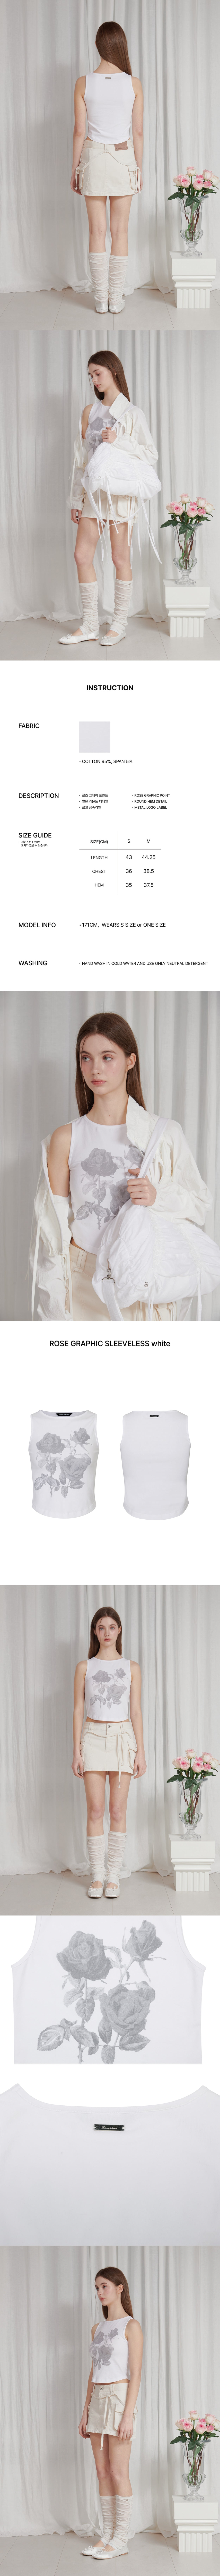 ROSE GRAPHIC SLEEVELESS white